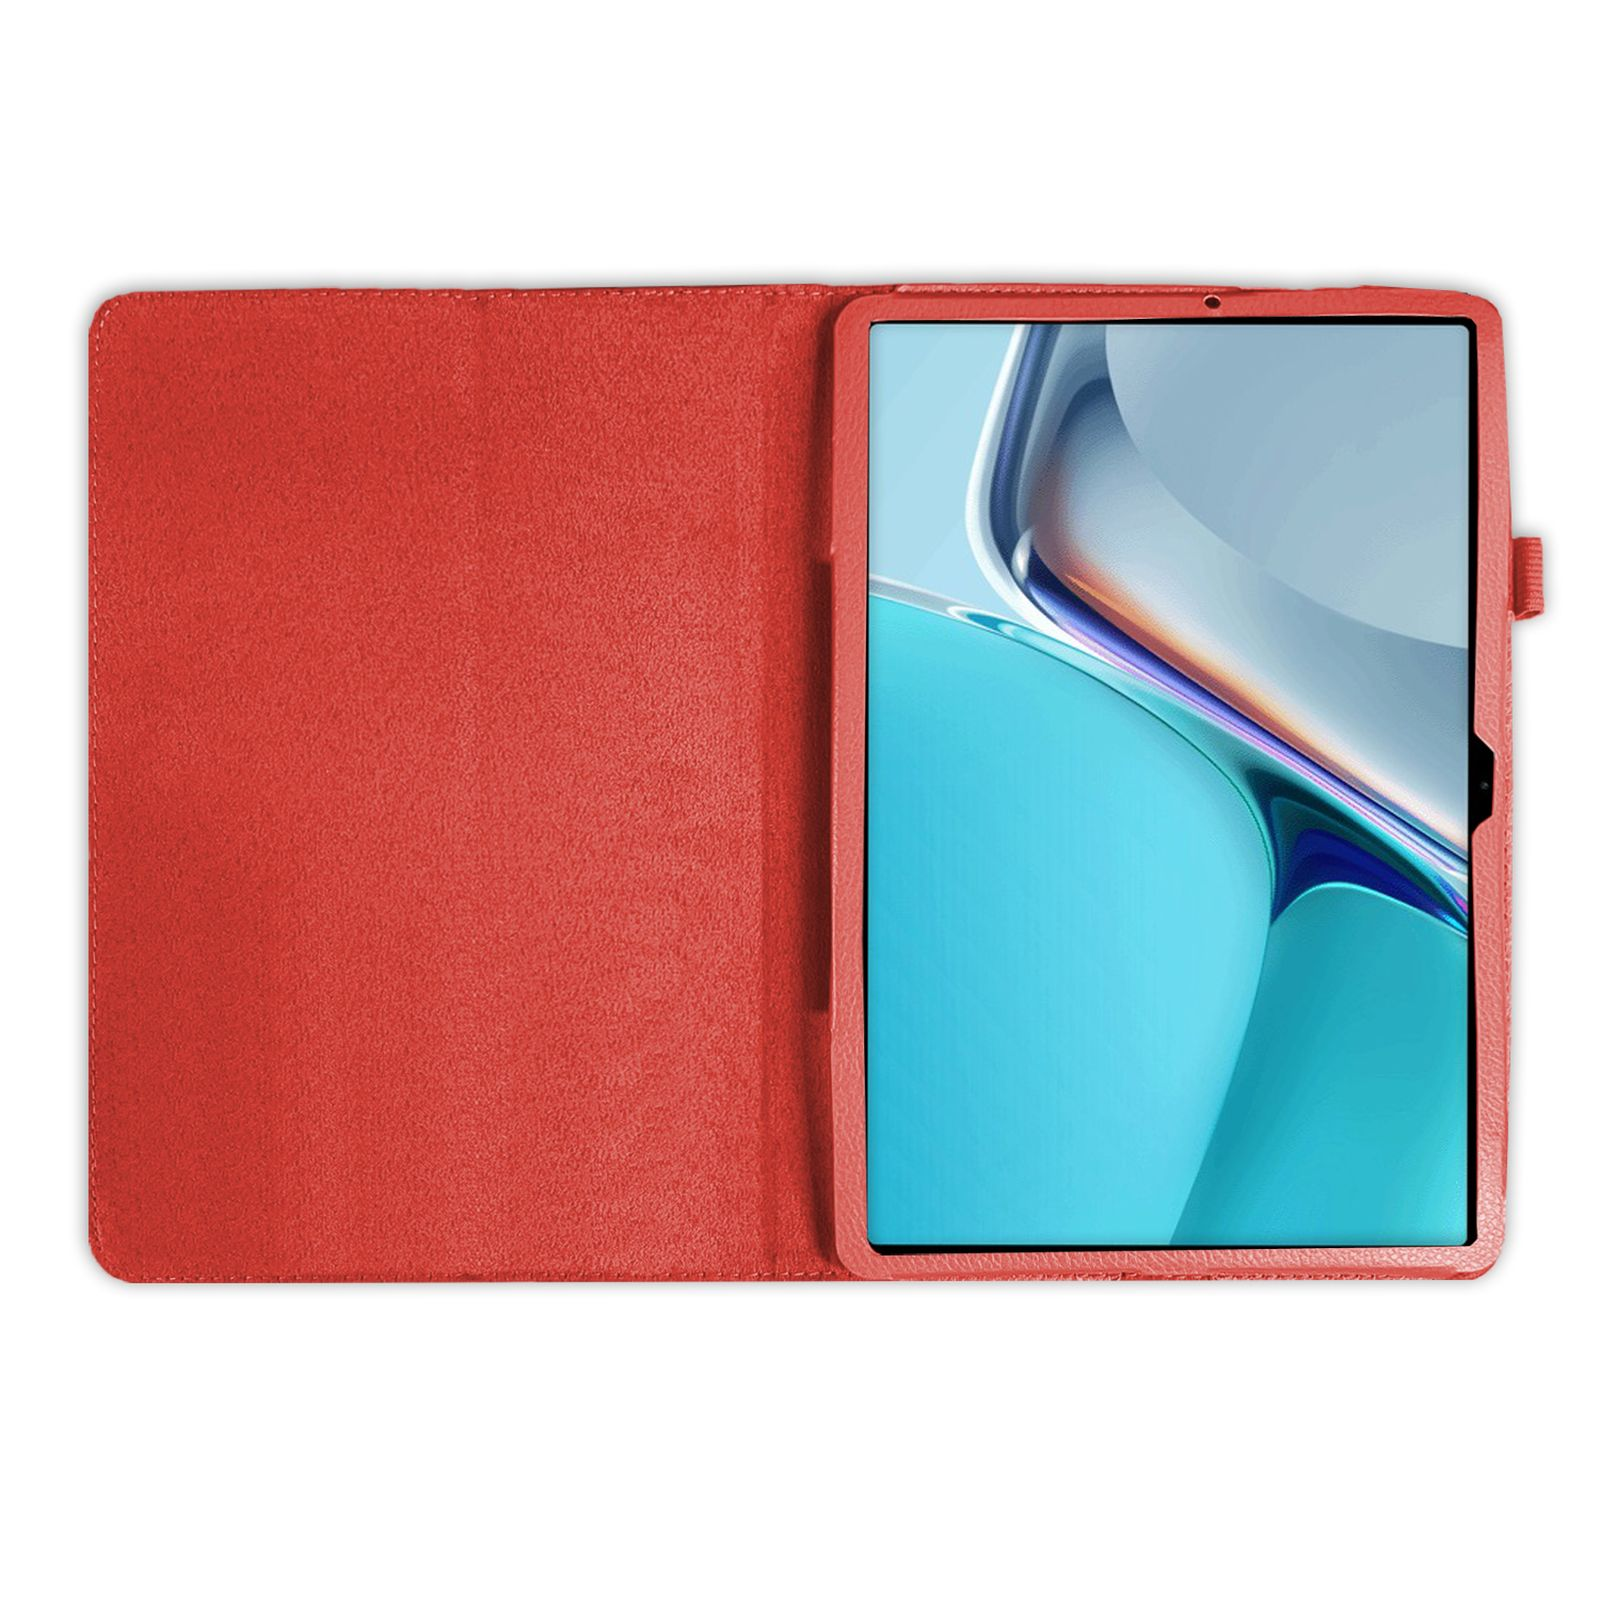 2in1 Rot 11 für 11 2021 + LOBWERK (Schutzhülle Zoll Kunstleder, Case Huawei MatePad Bookcover Schutzglas) Set